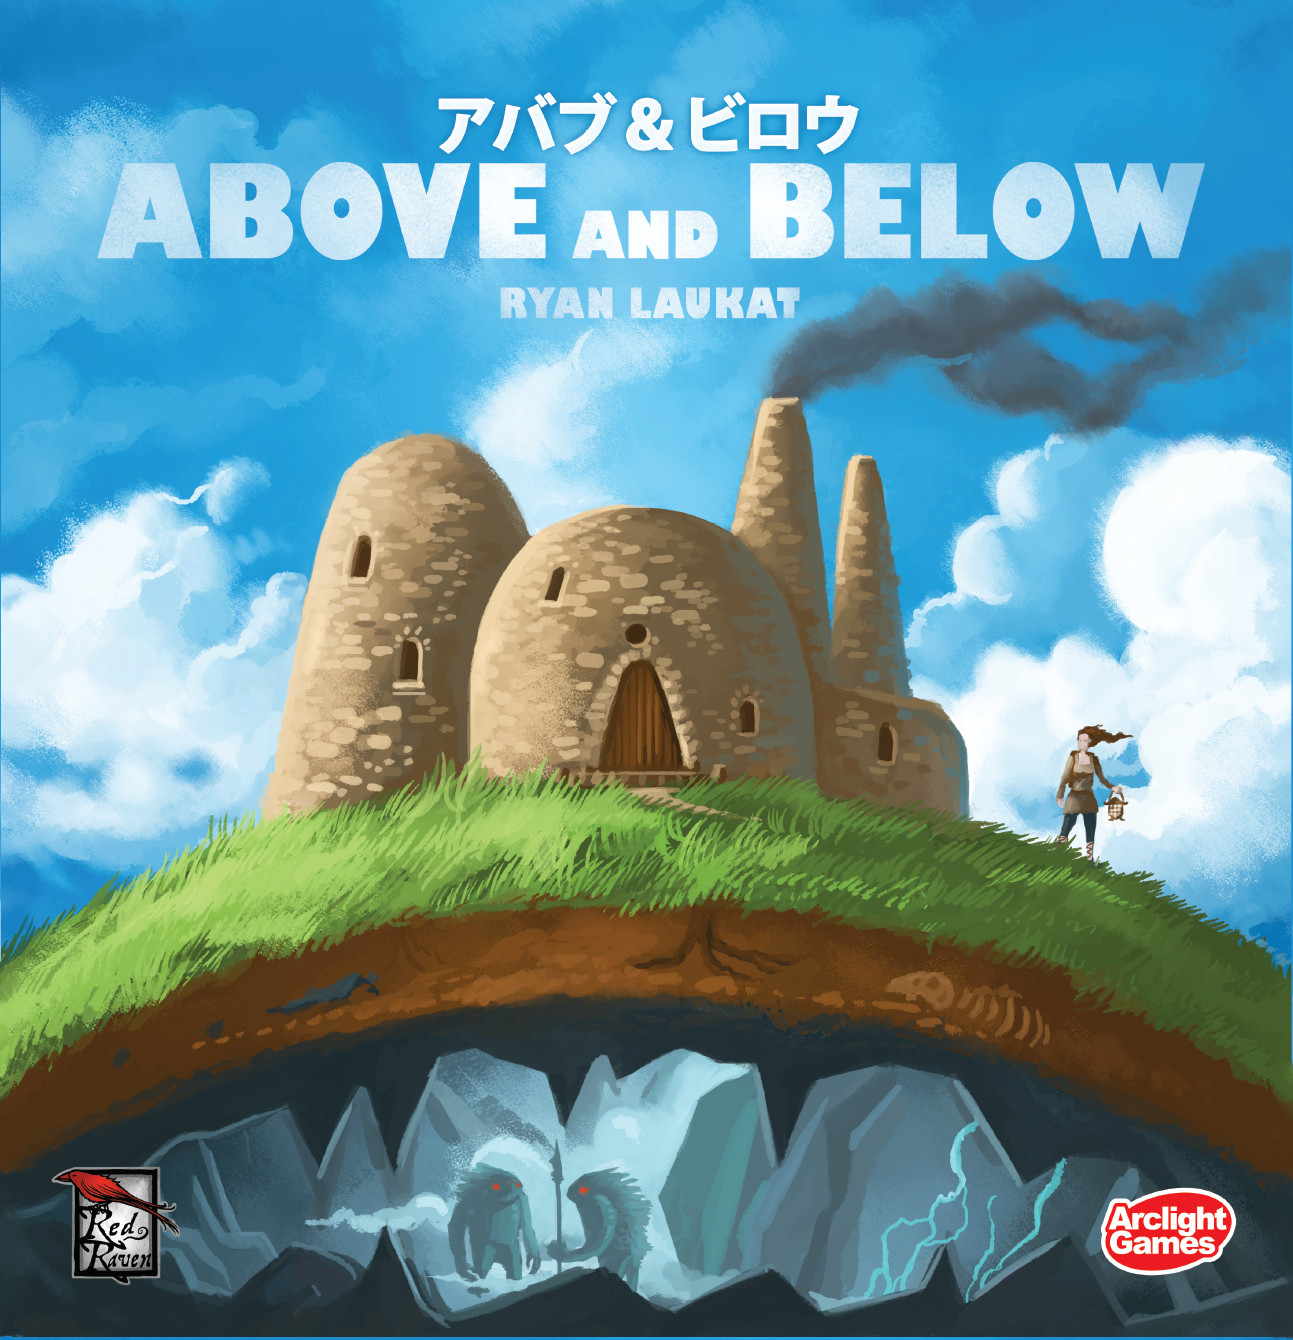 画像集/ボードゲーム「ザ・ネゴシエーター」「アバブ＆ビロウ」の完全日本語版が7月9日に発売